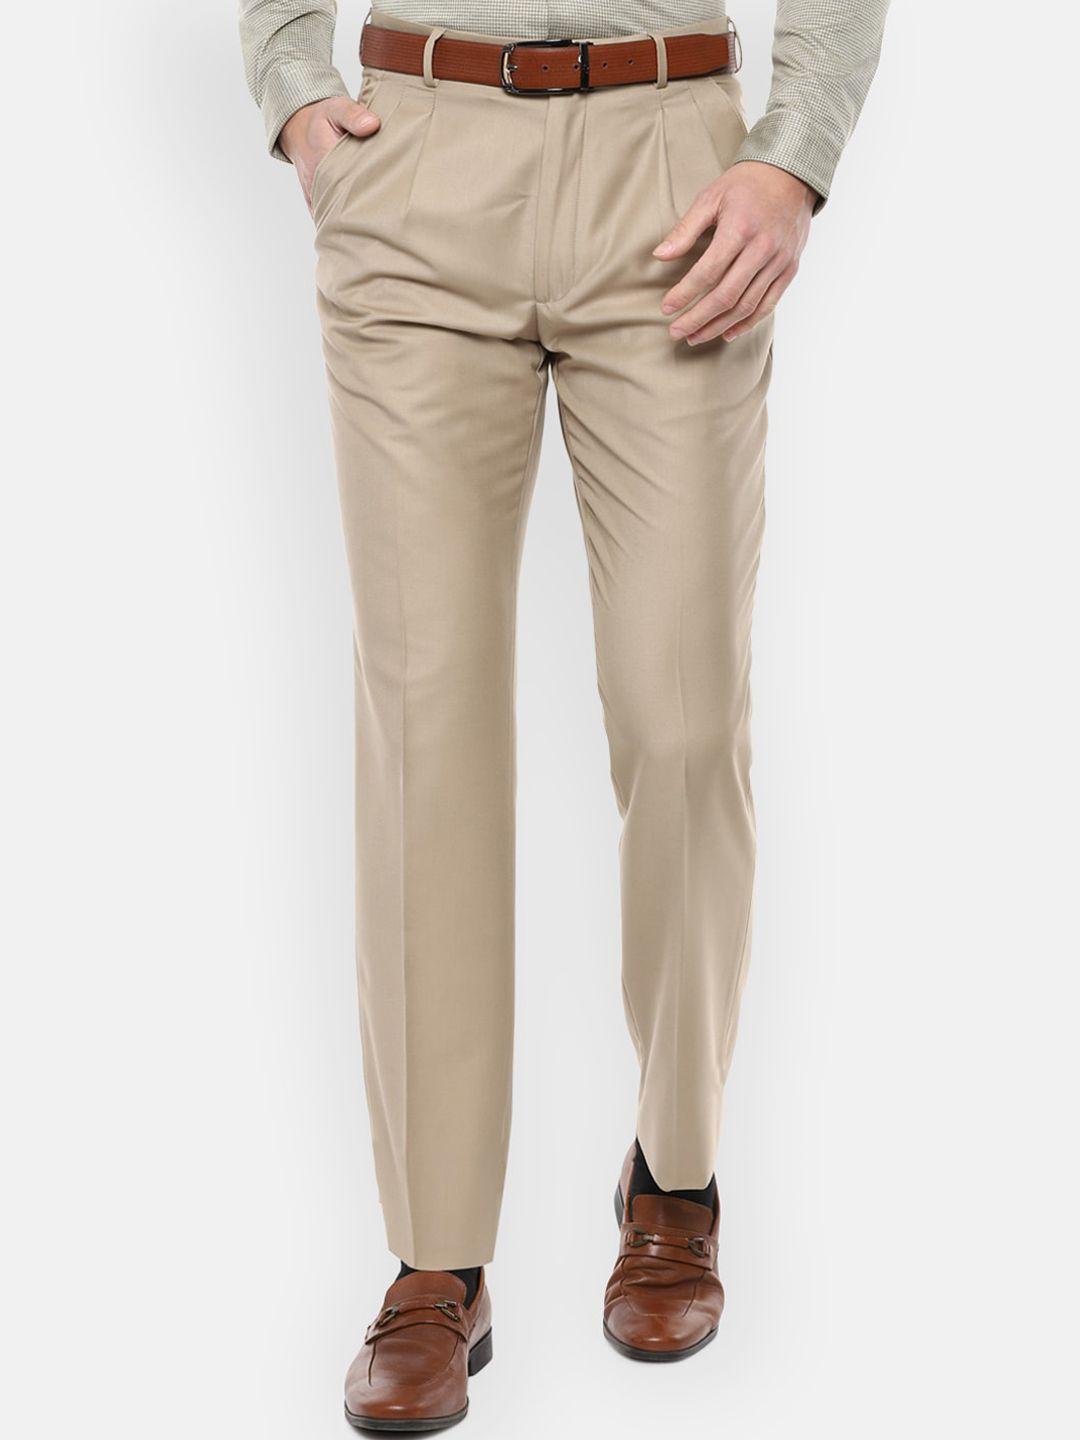 louis philippe men khaki solid regular-fit formal trousers